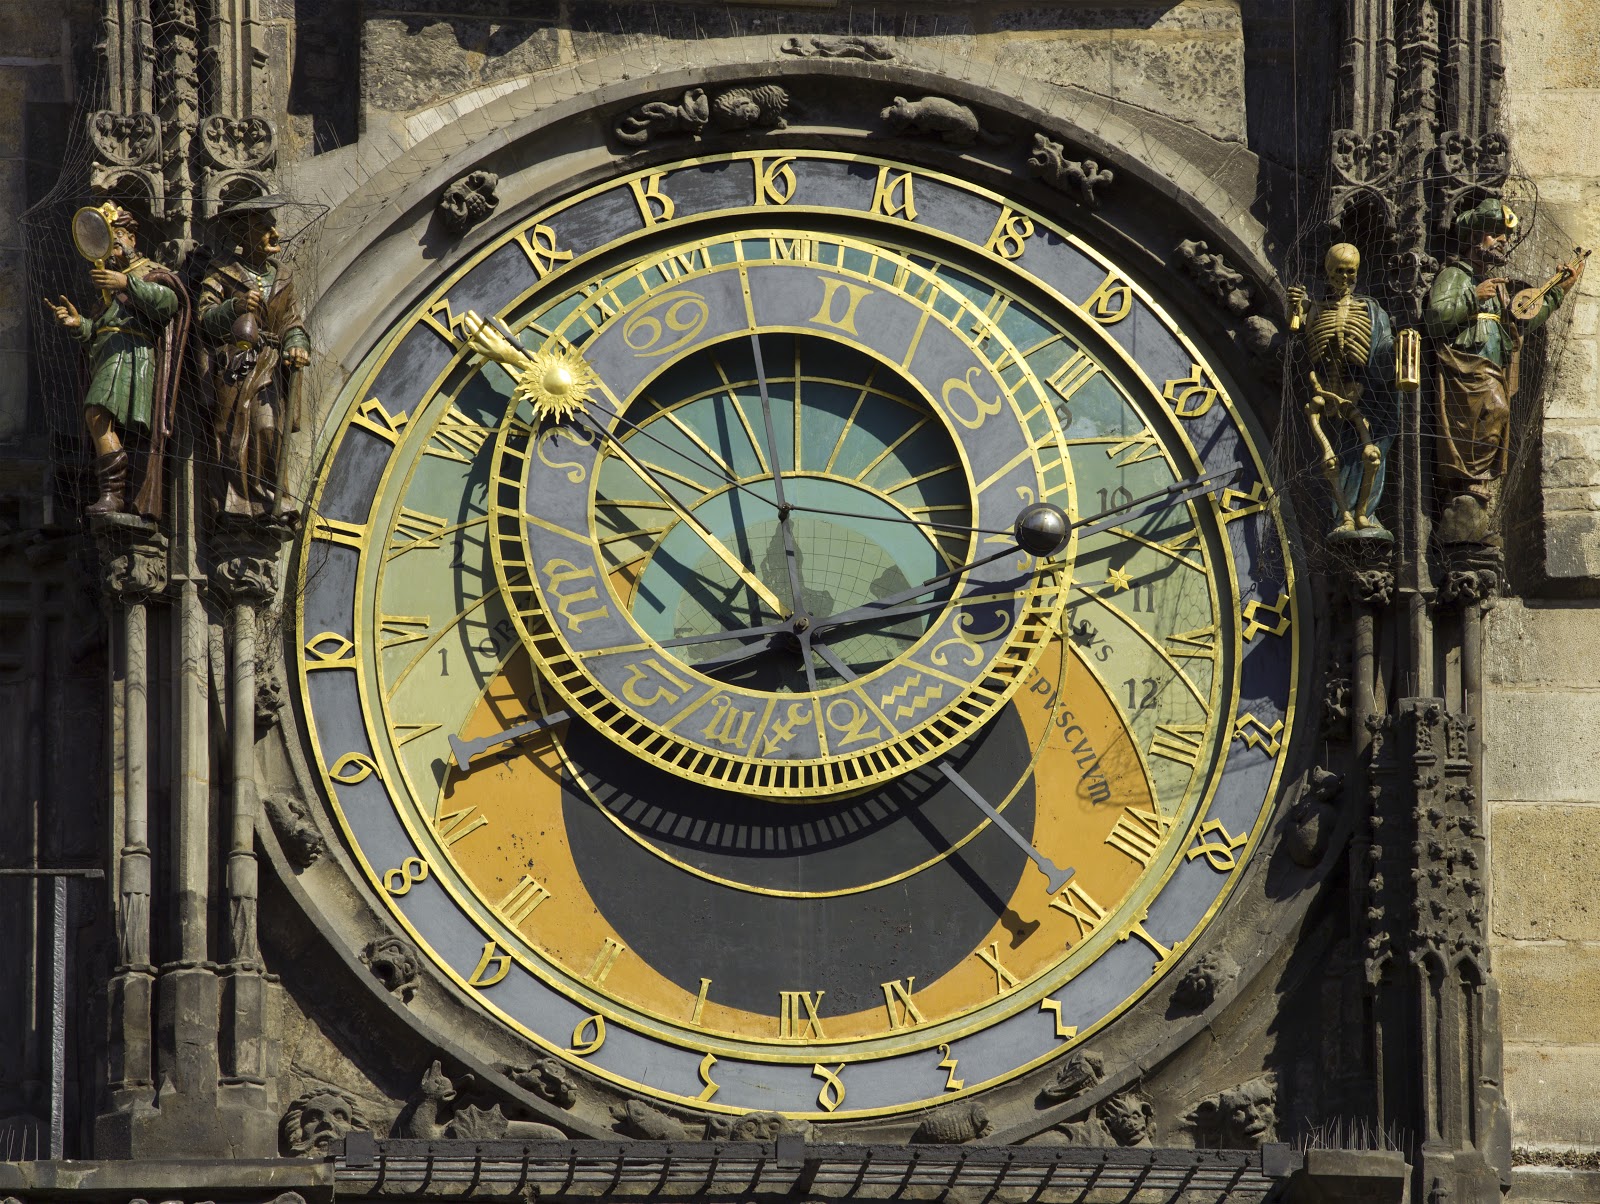 https://upload.wikimedia.org/wikipedia/commons/2/2d/Czech-2013-Prague-Astronomical_clock_face.jpg